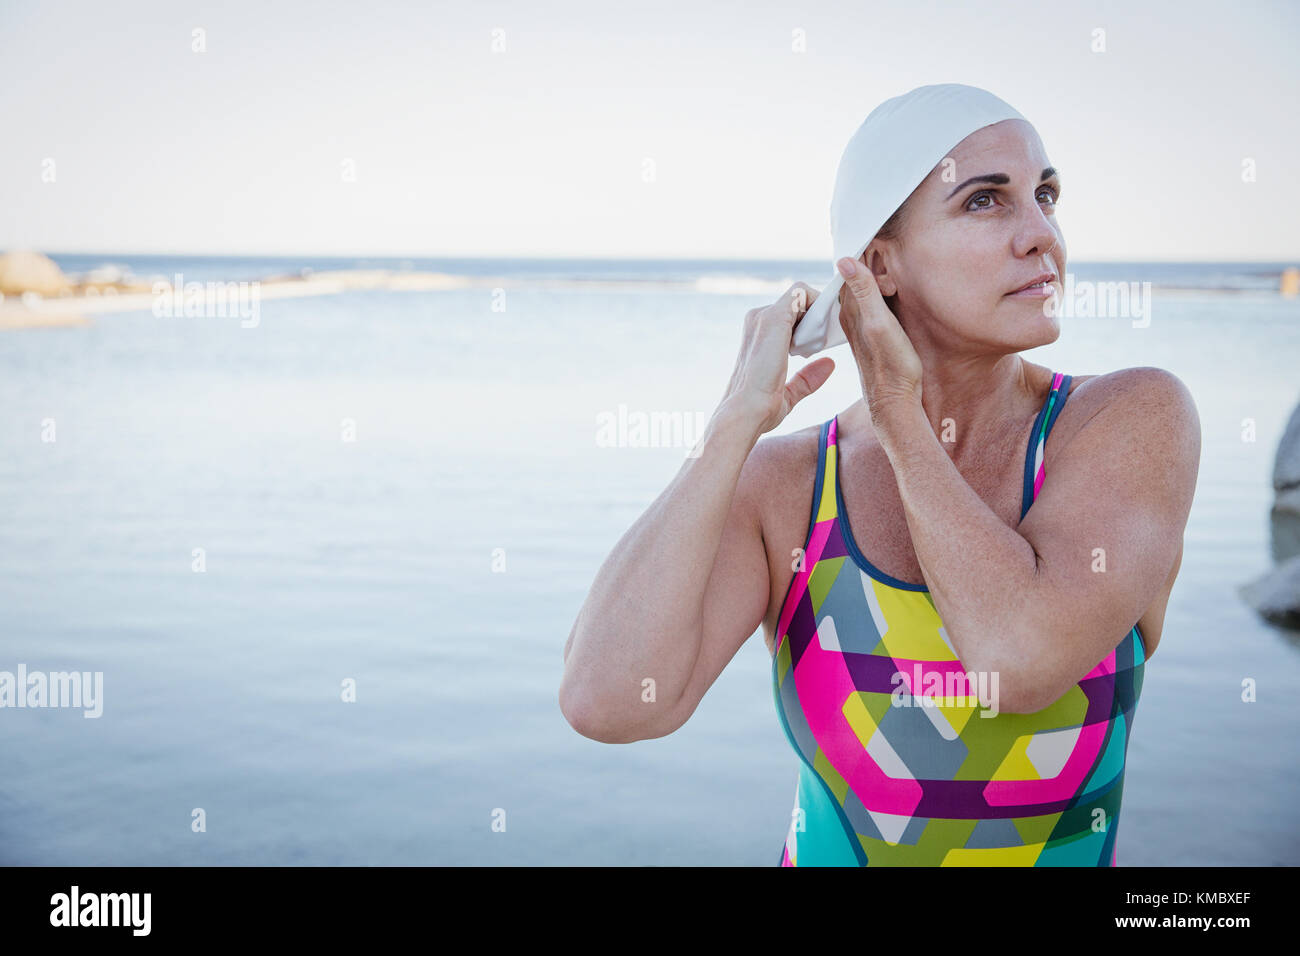 Nuotatore femminile in acqua aperta che regola la cuffia dell'oceano Foto Stock